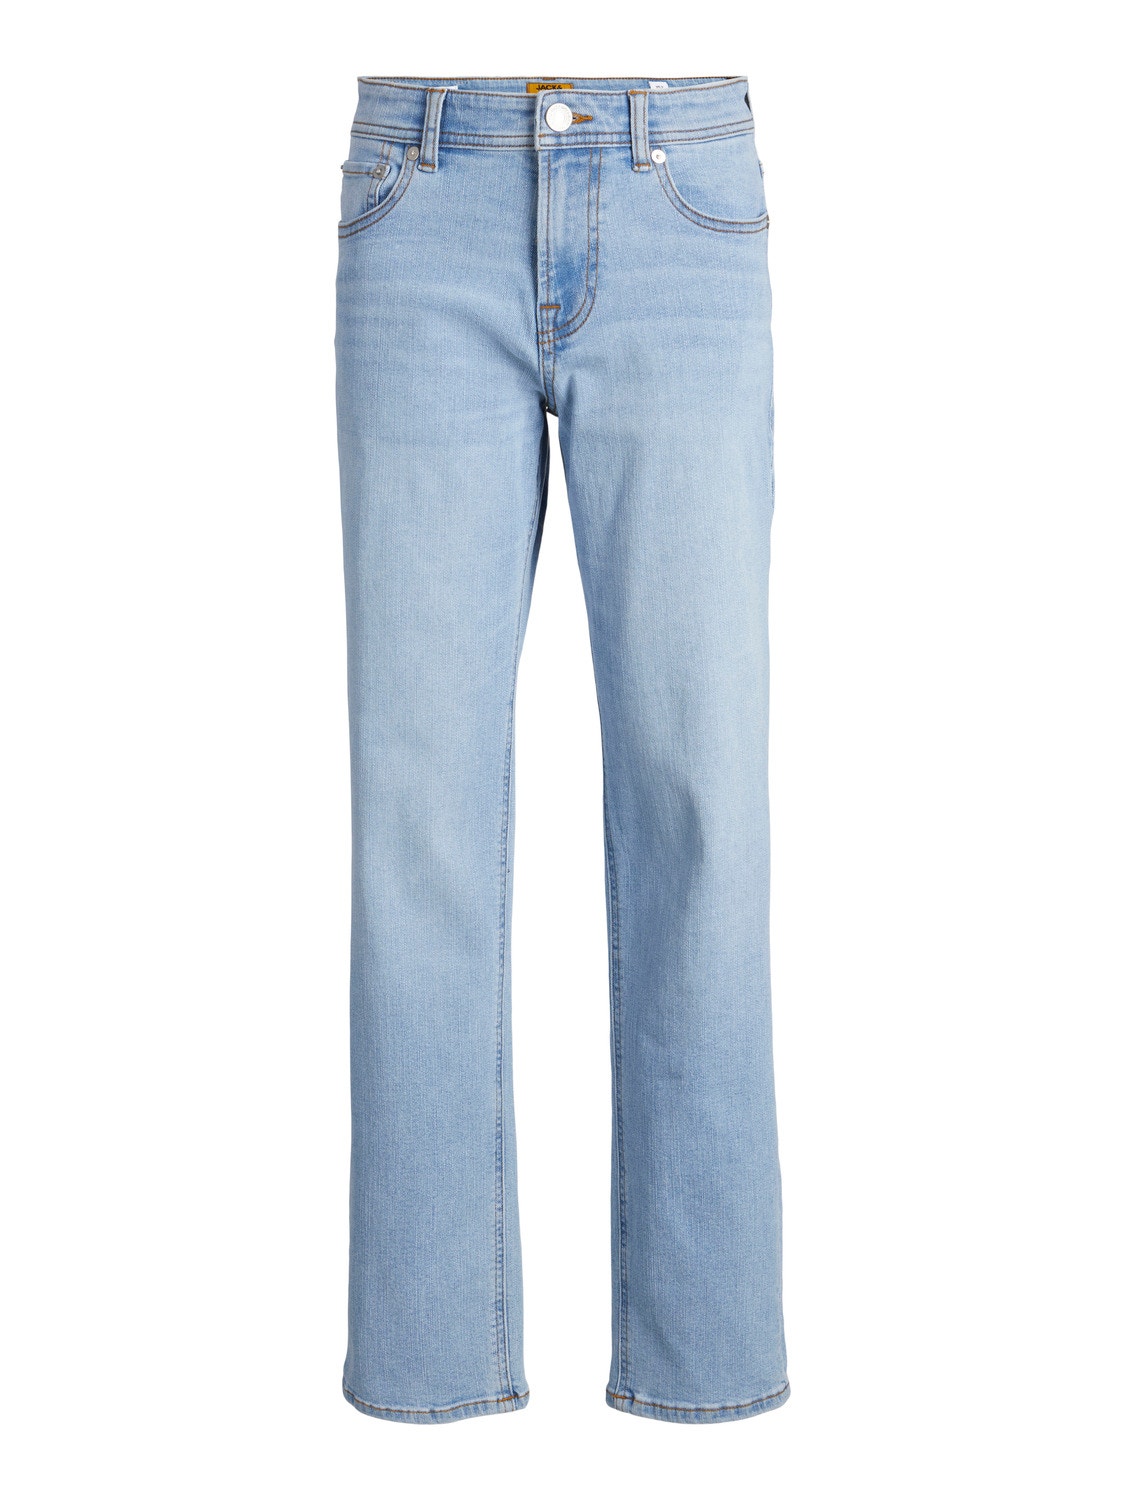 Jack & Jones JJICLARK JJORIG STRETCH SQ 702 SN Regular fit Jeans Für jungs -Blue Denim - 12249108